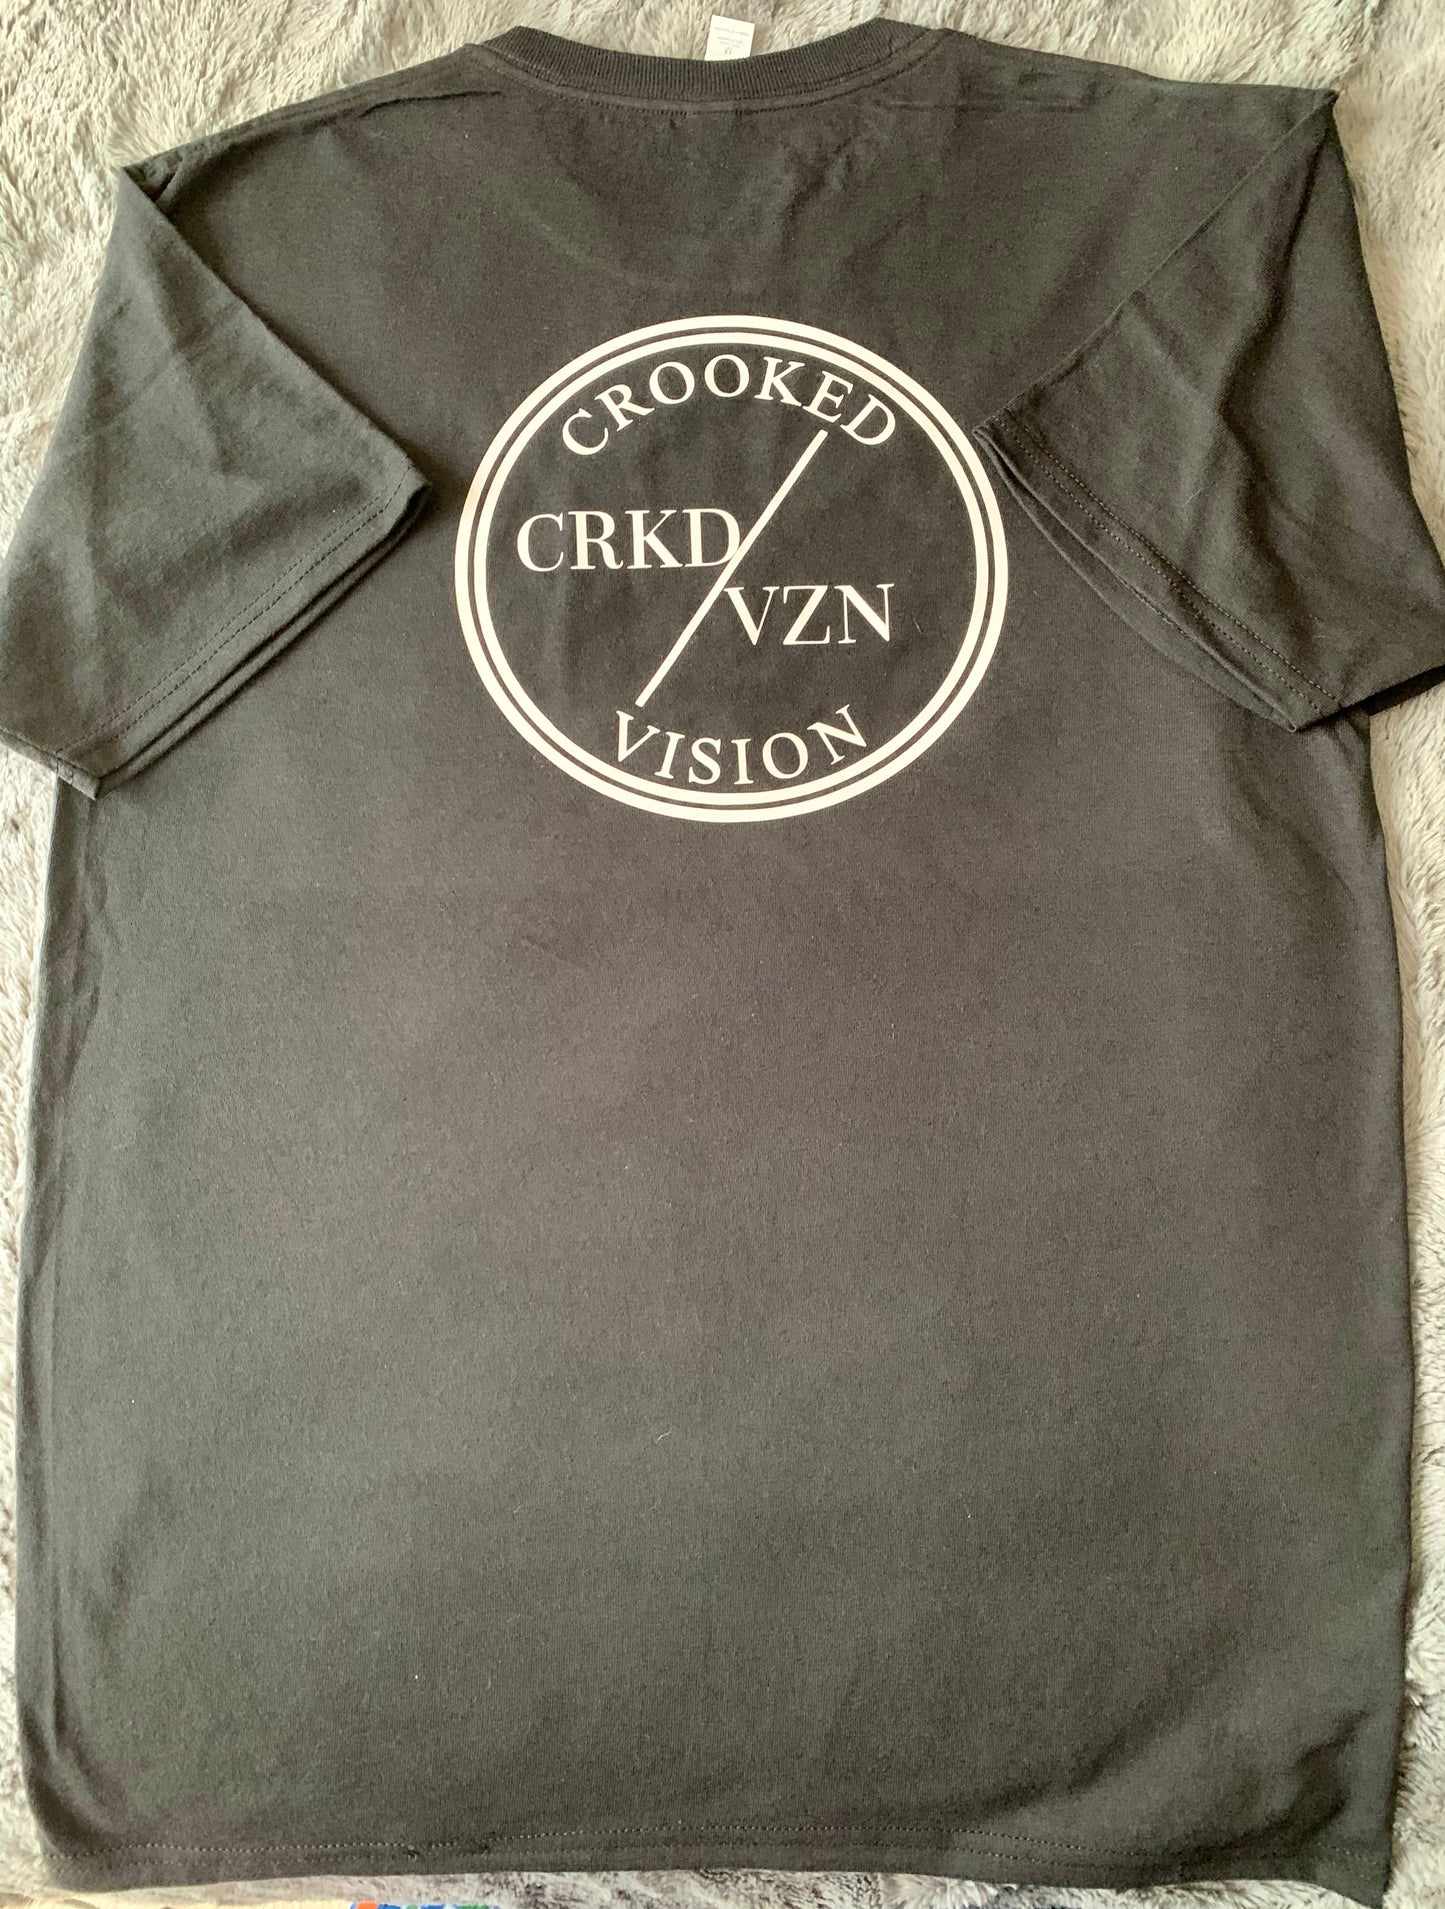 Black CRKD/VZN T-Shirt